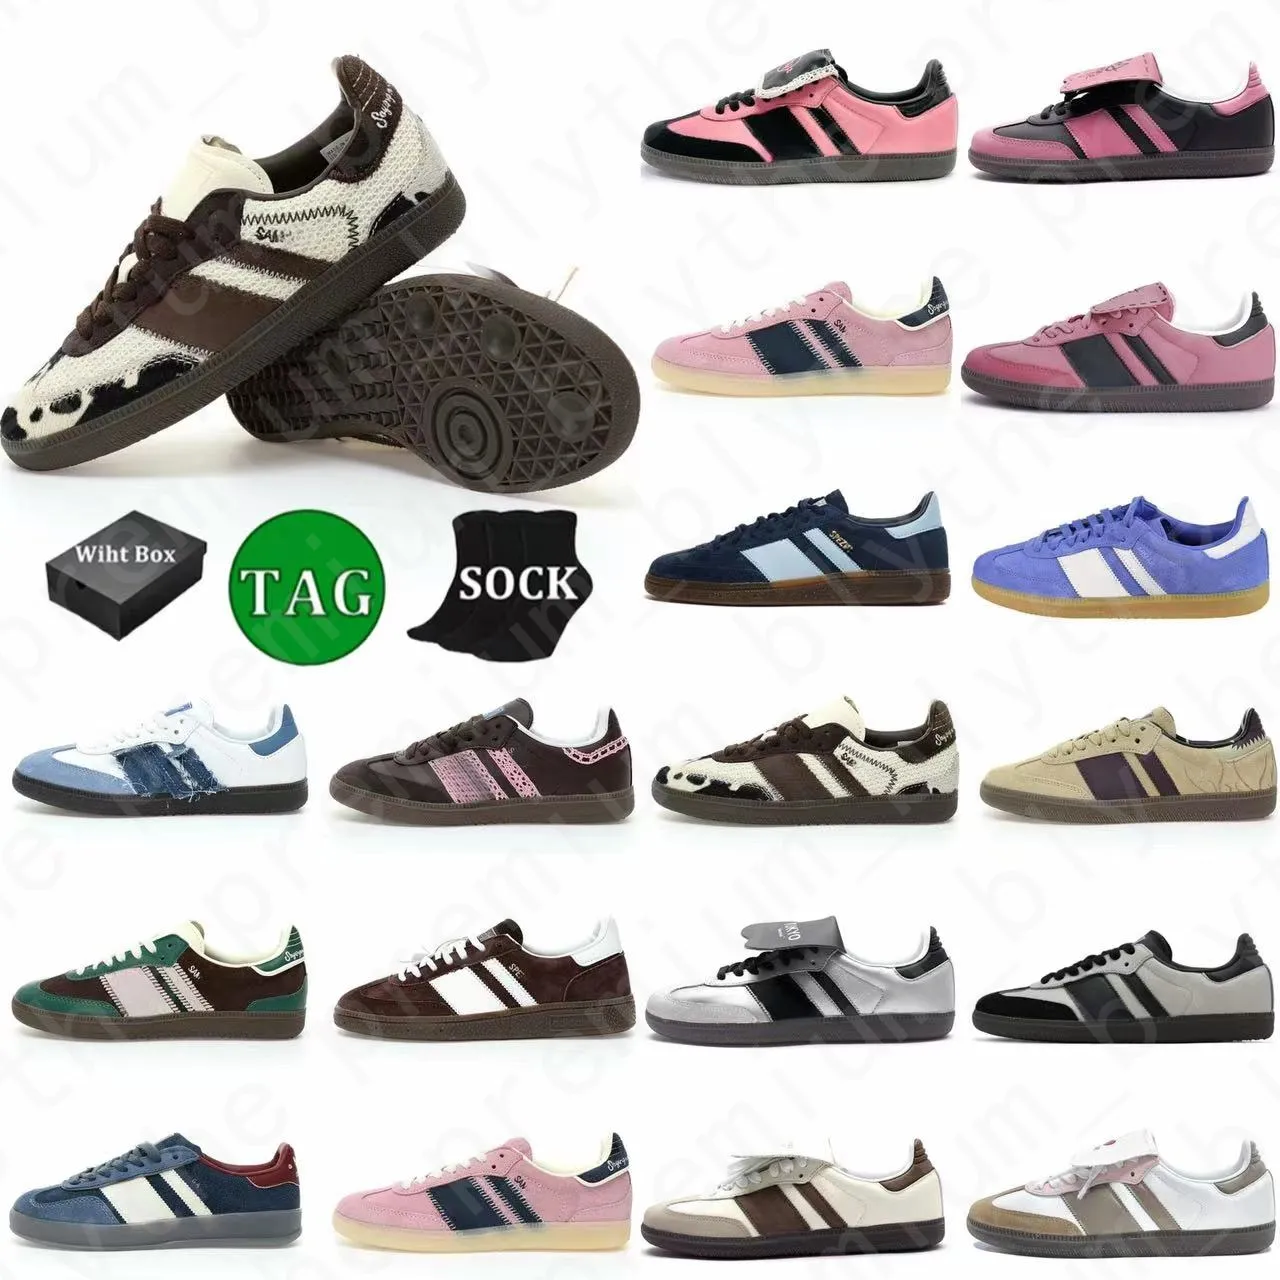 Met doos nieuwe stijl designer schoenen SPEZIAL OG SHOUS Wales Bonners Outdoor Non-Slip Outsole Sambas Sneakers Sports Trainers Casual schoenen voor mannen Women Big Size 36-45